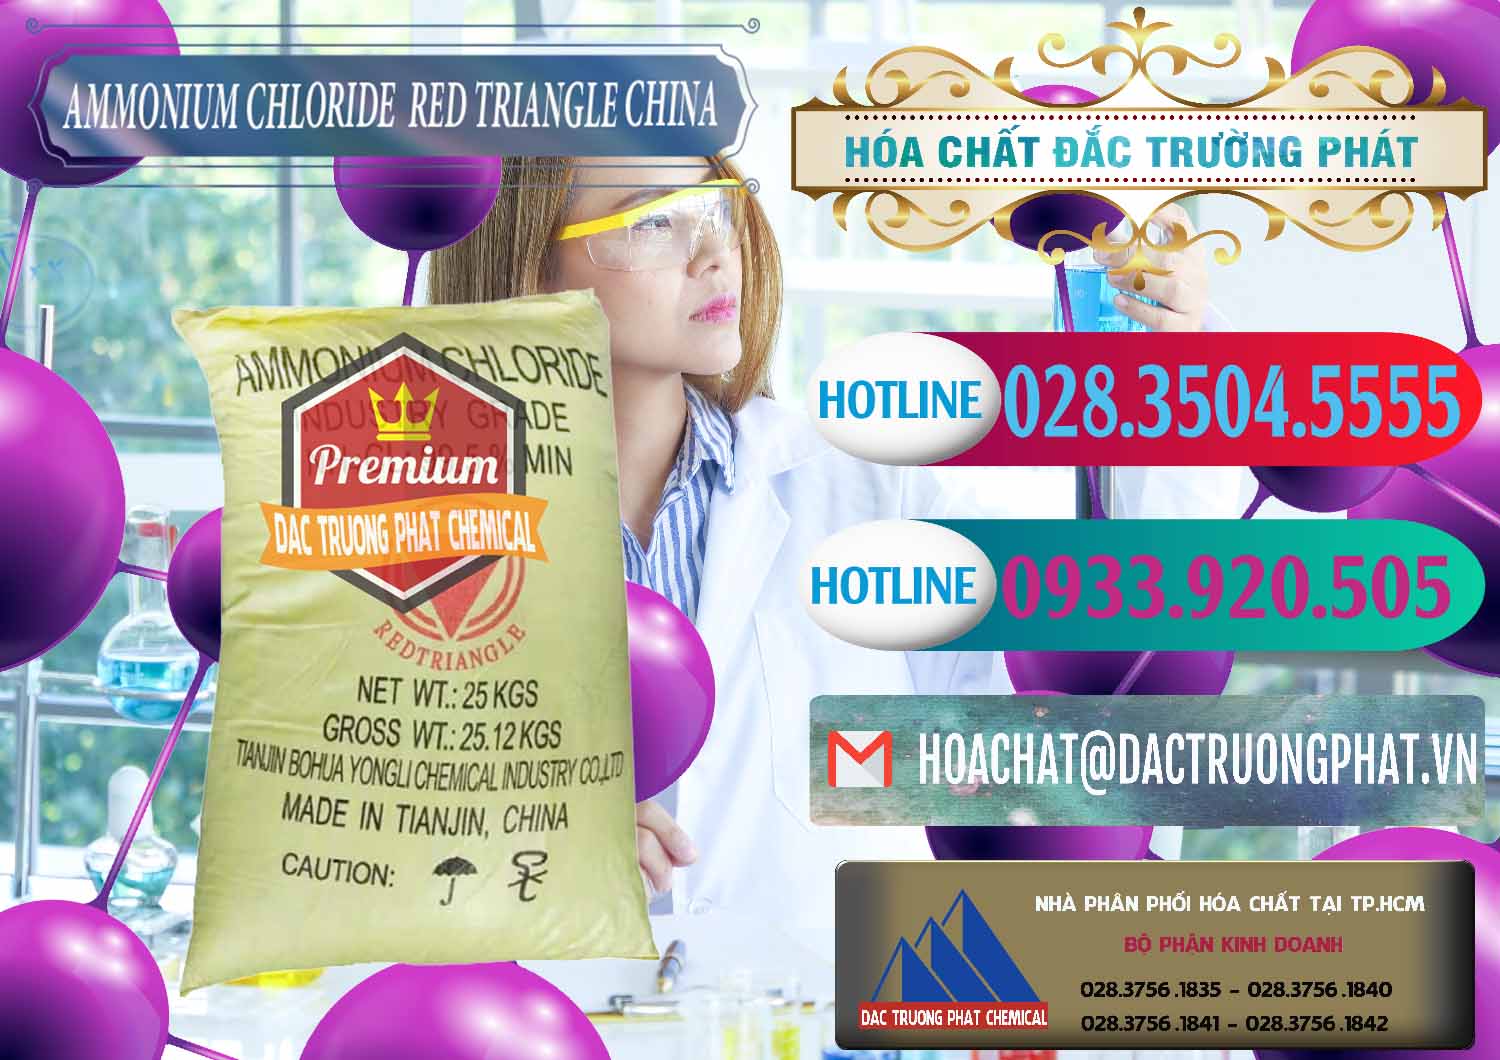 Cty chuyên kinh doanh - bán Ammonium Chloride - Muối Lạnh NH4CL Red Triangle Trung Quốc China - 0377 - Đơn vị chuyên kinh doanh & cung cấp hóa chất tại TP.HCM - truongphat.vn